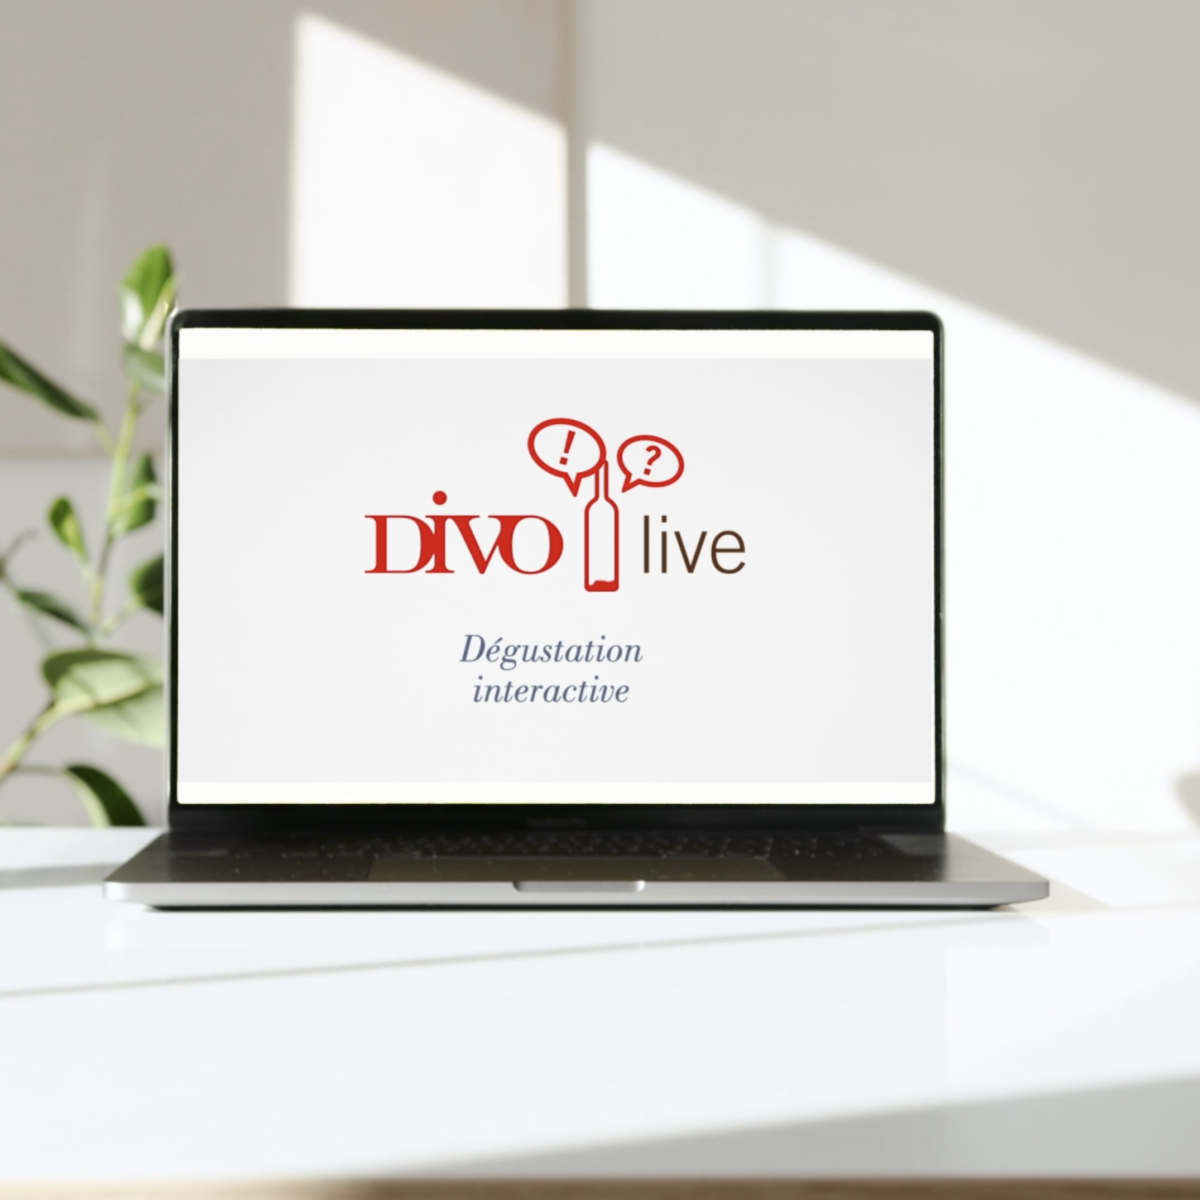 Animation DIVO live, dégustation interactive, sur l'écran d'un laptop.